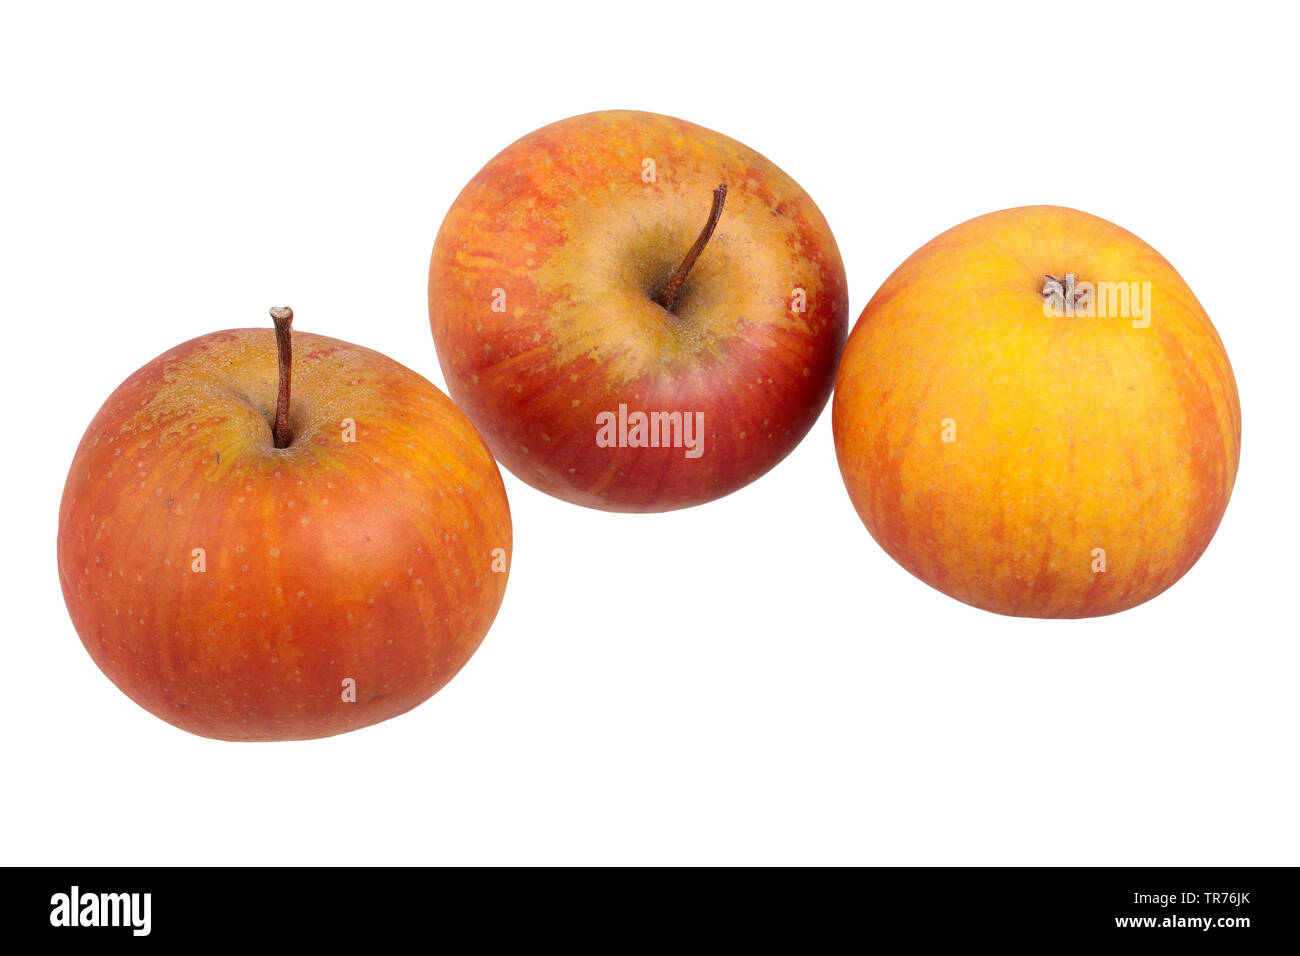 apple (Malus domestica 'Rubinette', Malus domestica Rubinette), cultivar Rubinette, cutout, Germany Stock Photo